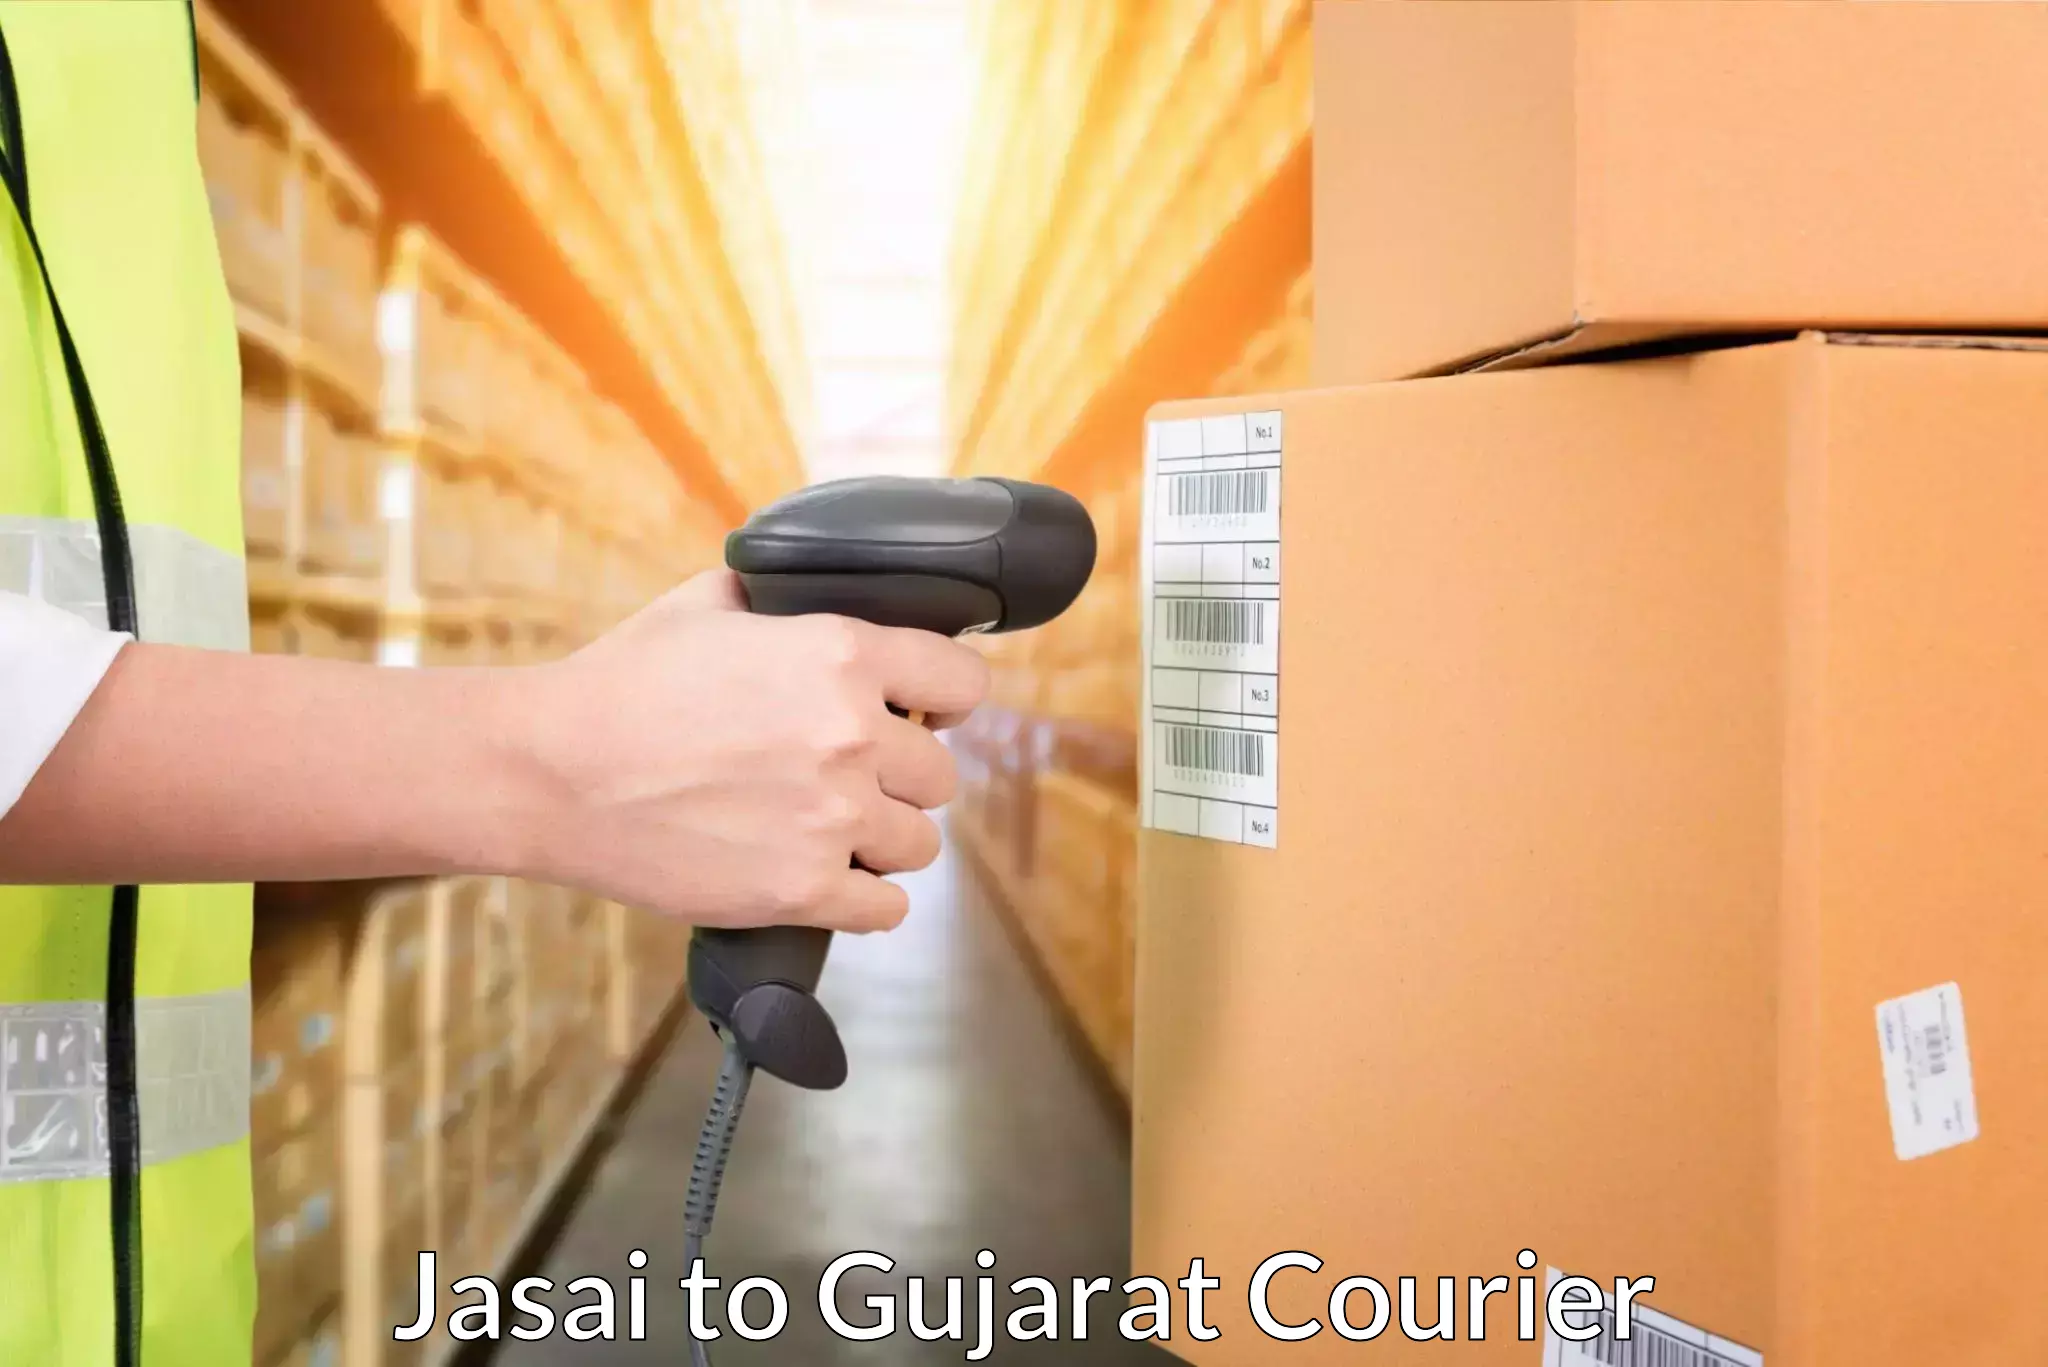 High-performance logistics Jasai to Gujarat